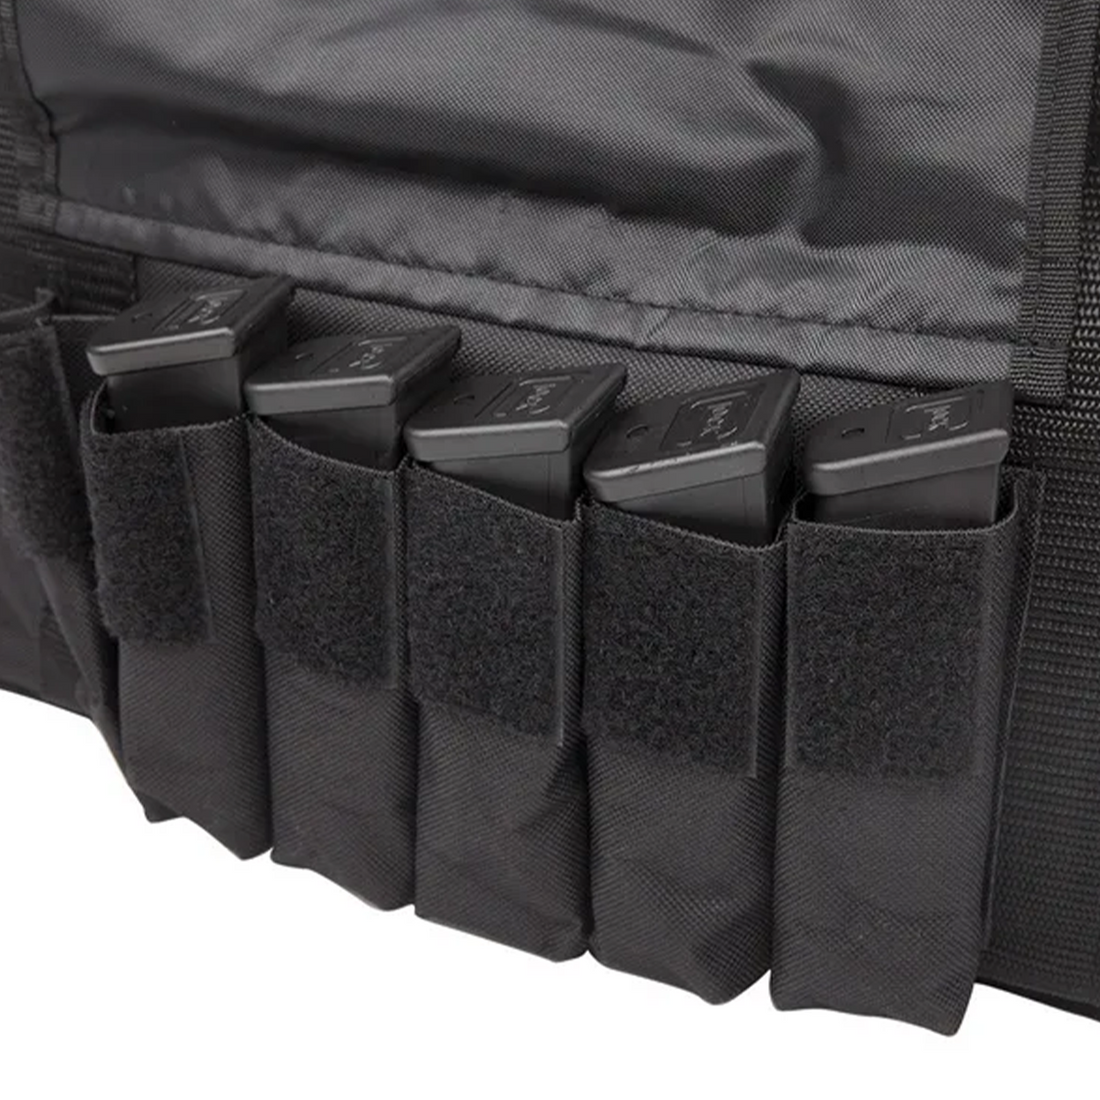 Glock OEM Range Bag (Four Pistol)